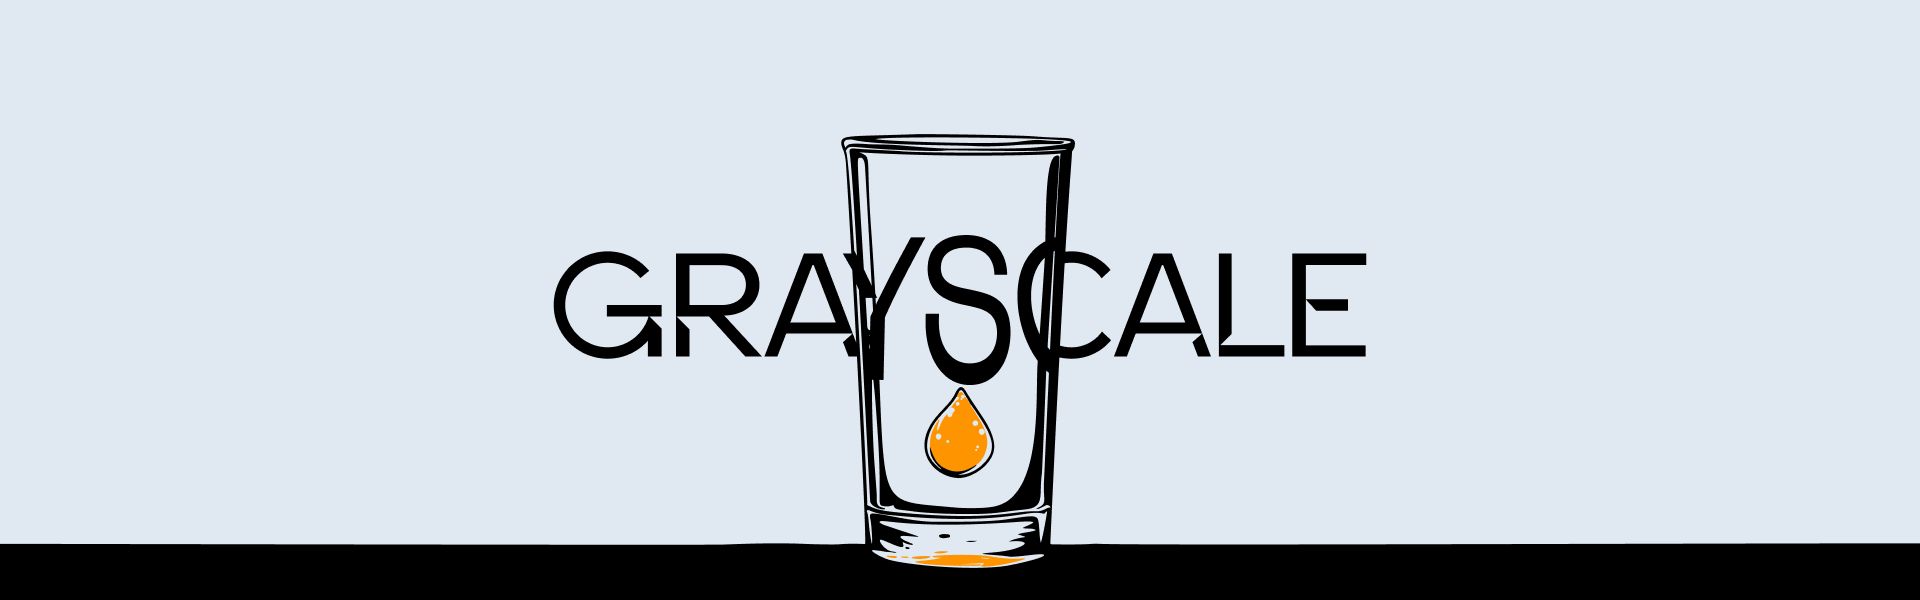 Grayscale хоче запустити біткоїн-фонд із найнижчою комісією